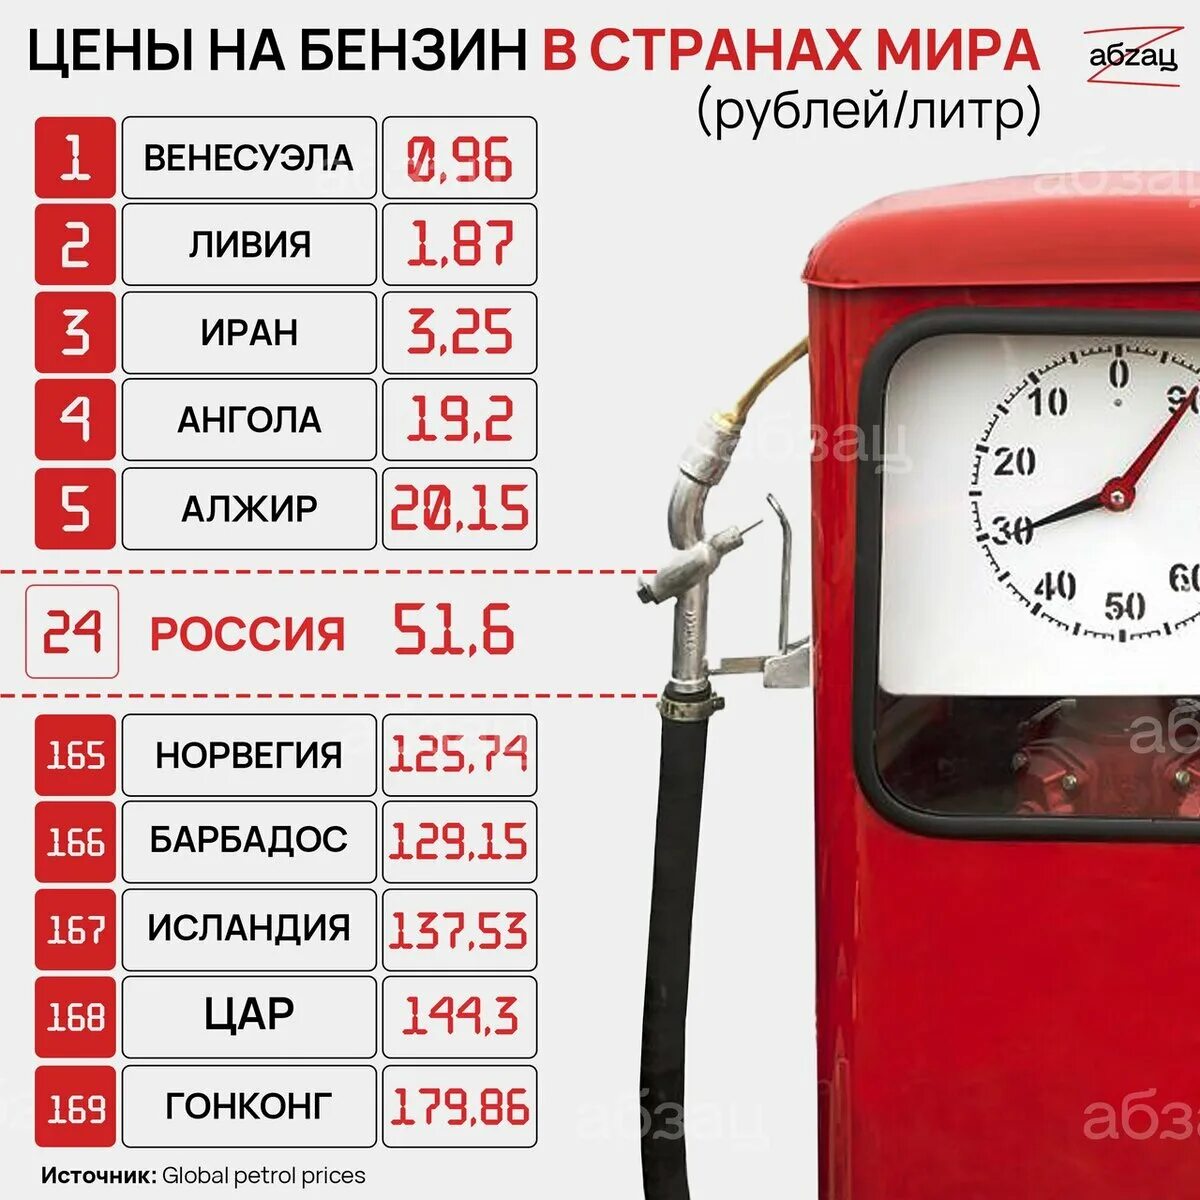 Цена бензина за 1 литр. Сколько стоит 1 литр бензина. Бензин 40 рублей за литр. Бензин в Казахстане и России.